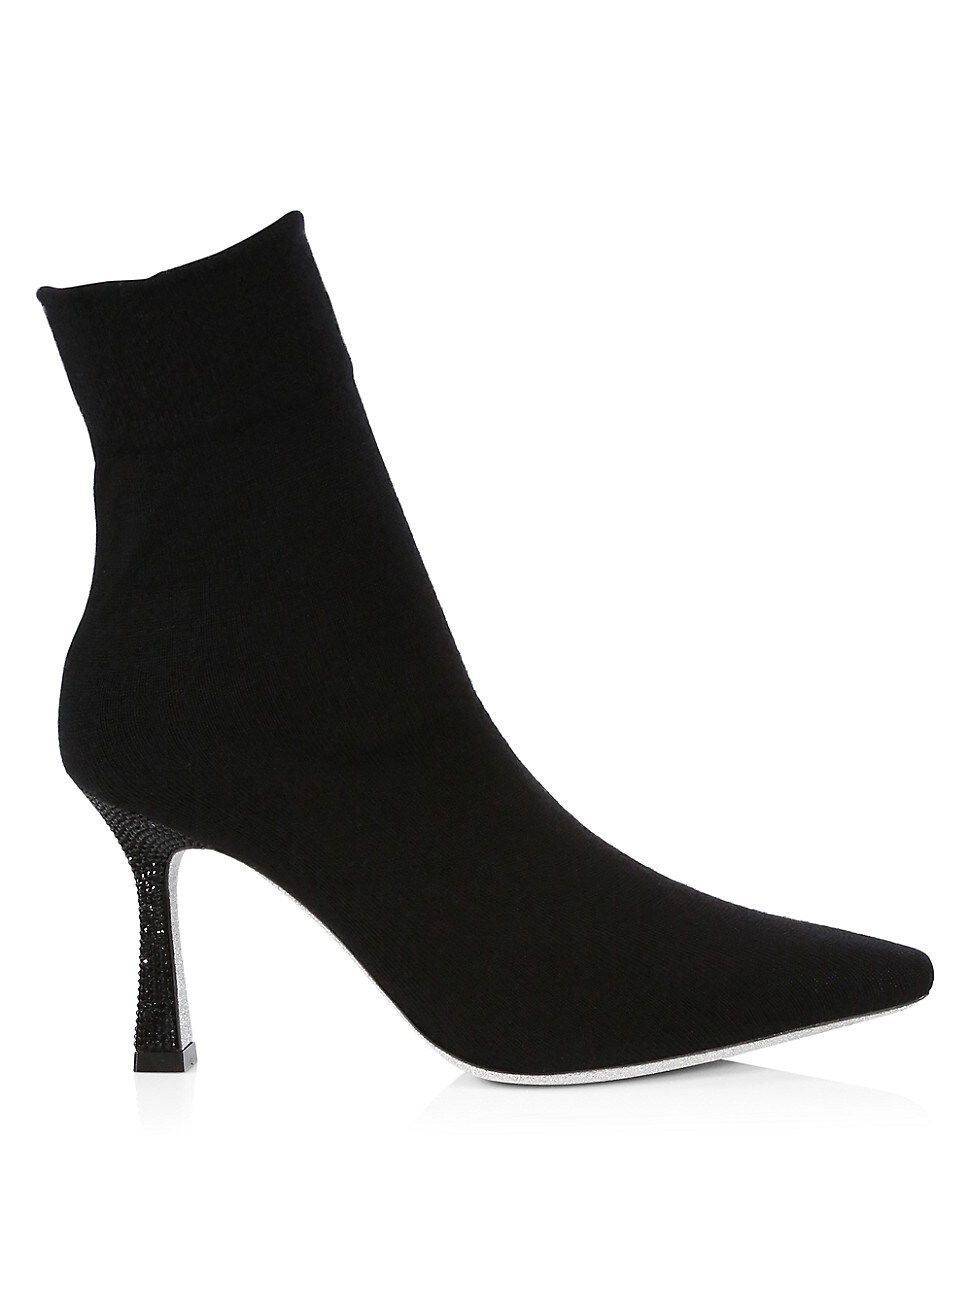 Rene Caovilla Women's Embellished-Heel Sock Boots - Black - Size 11 | Saks Fifth Avenue